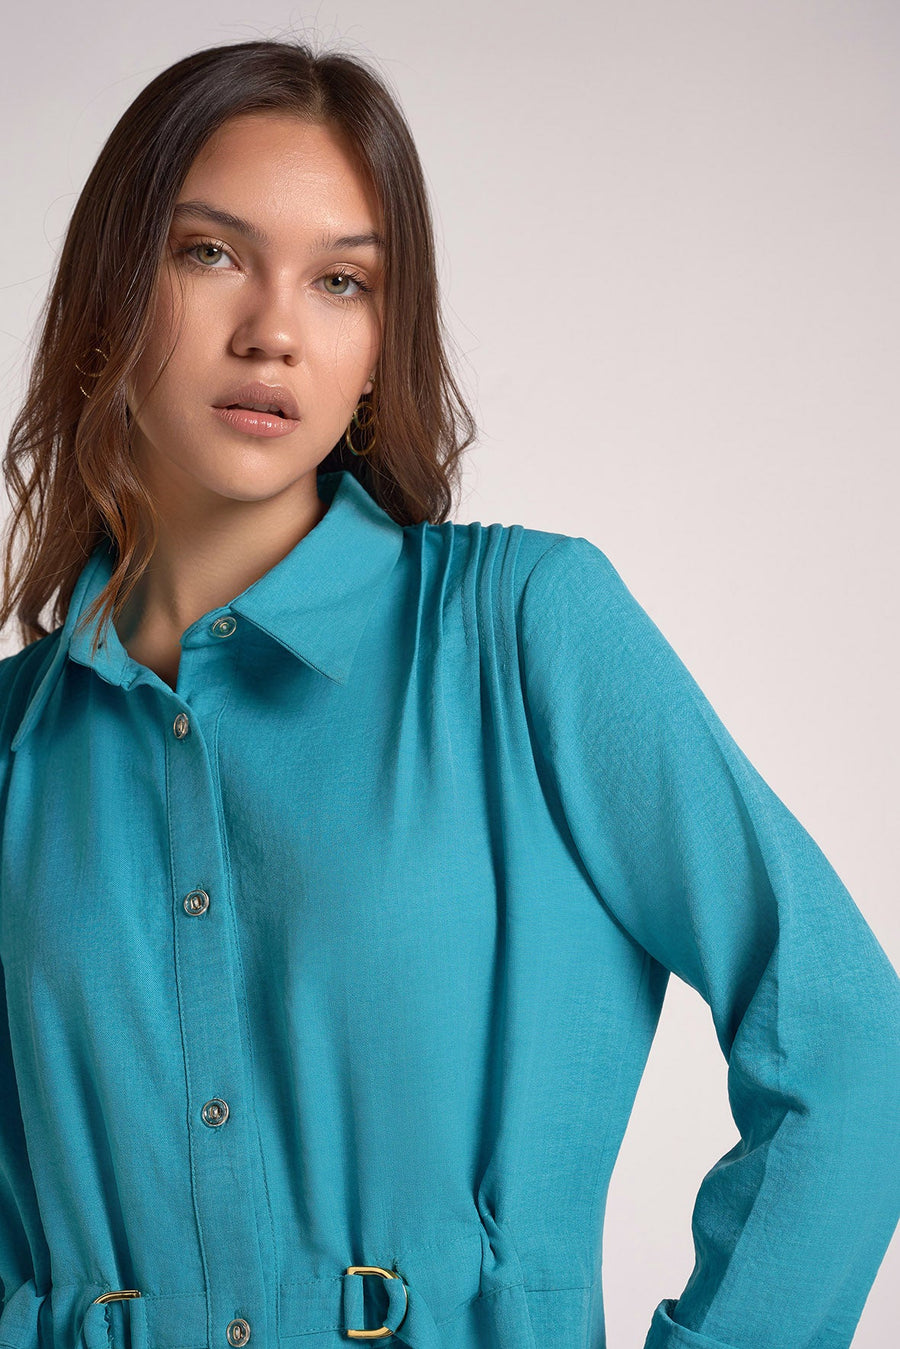 Turquoise shirt dress belt within - nahlaelalfydesigns